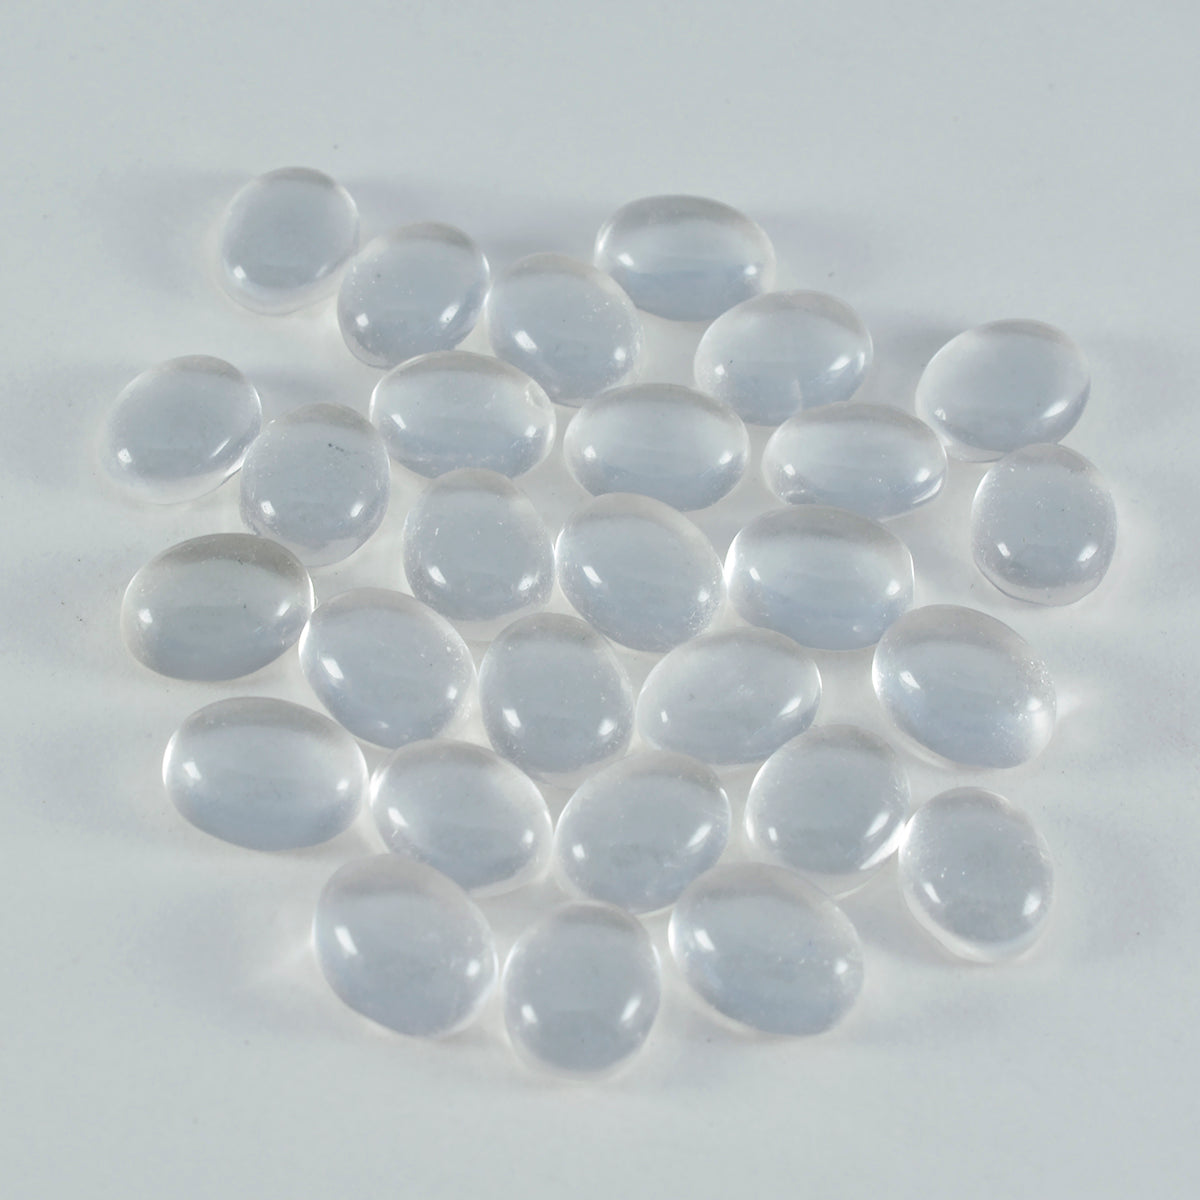 Riyogems 1pc cabochon de quartz en cristal blanc 6x8 mm forme ovale qualité étonnante pierre précieuse en vrac